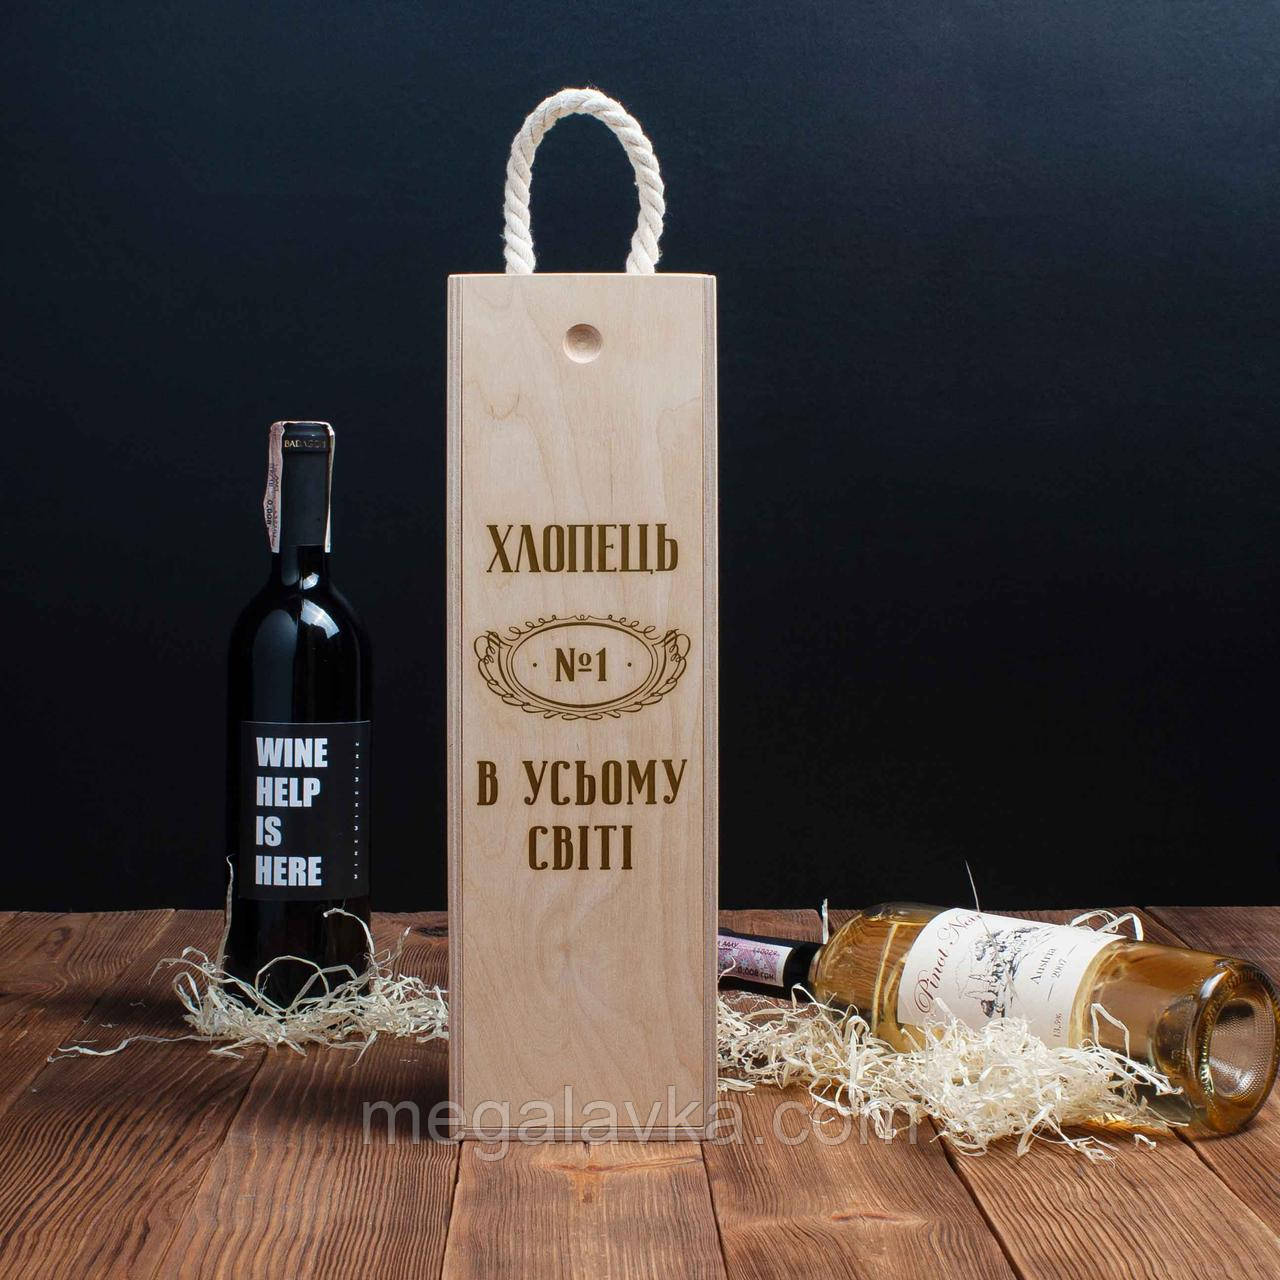 Коробка для пляшки вина "Хлопець №1 в усьому світі" подарункова